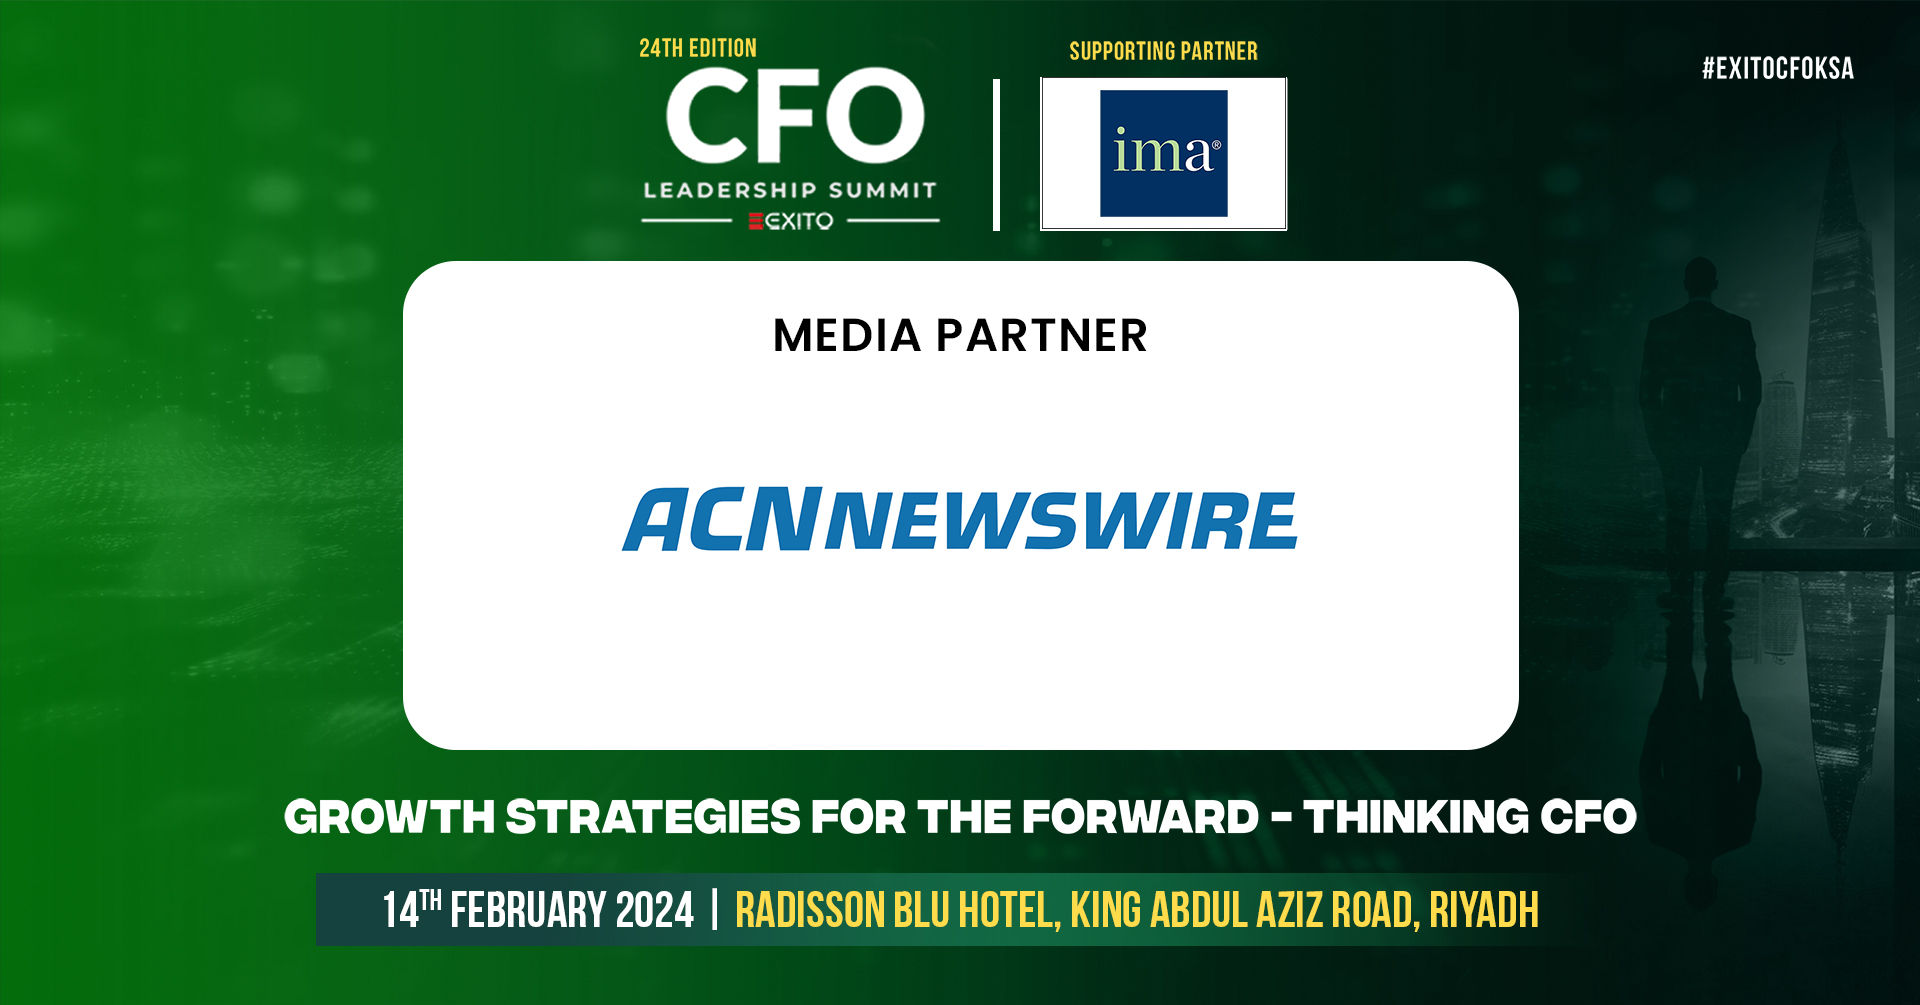 A CFO Leadership Summit 24. kiadása: KSA